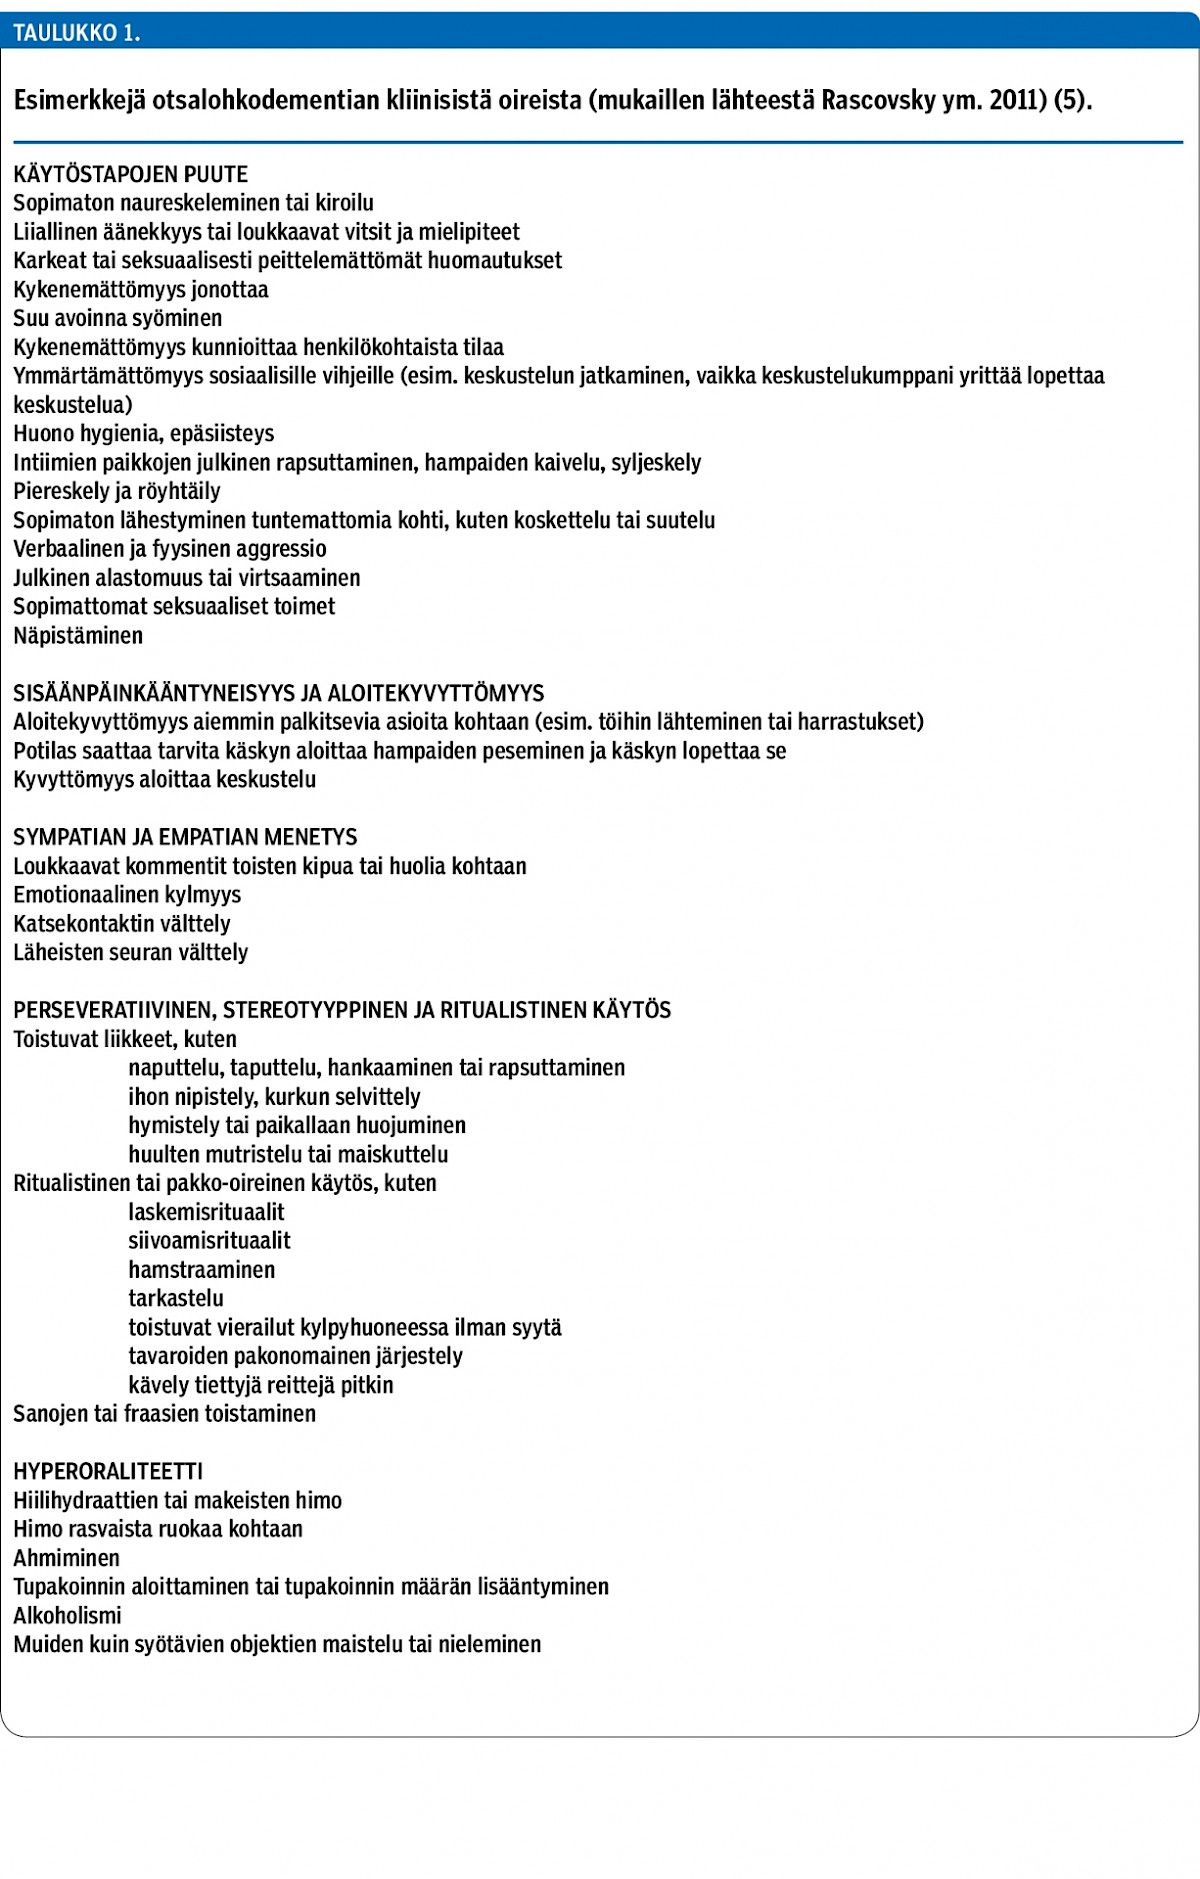 Esimerkkejä otsalohkodementian kliinisistä oireista (mukaillen lähteestä Rascovsky ym. 2011) (5).